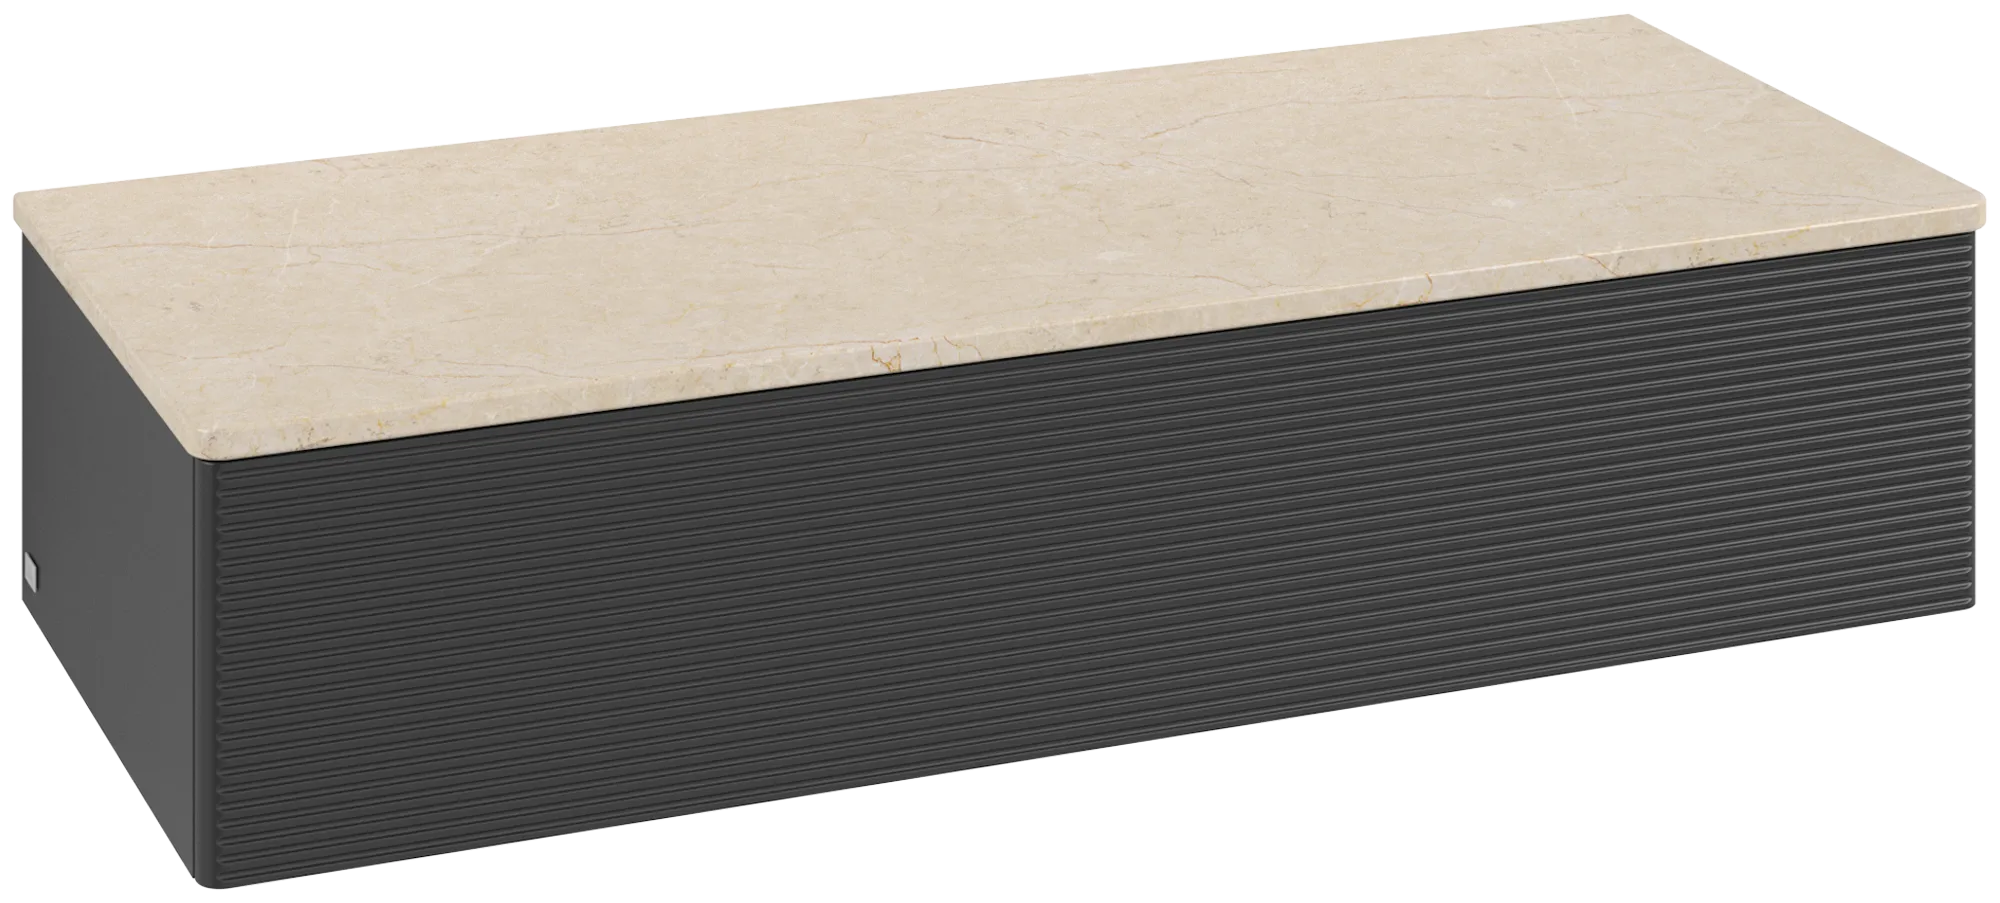 Bild von VILLEROY BOCH Antao Sideboard, 1 Auszug, 1200 x 268 x 500 mm, Front mit Struktur, Black Matt Lacquer / Botticino #K41103PD